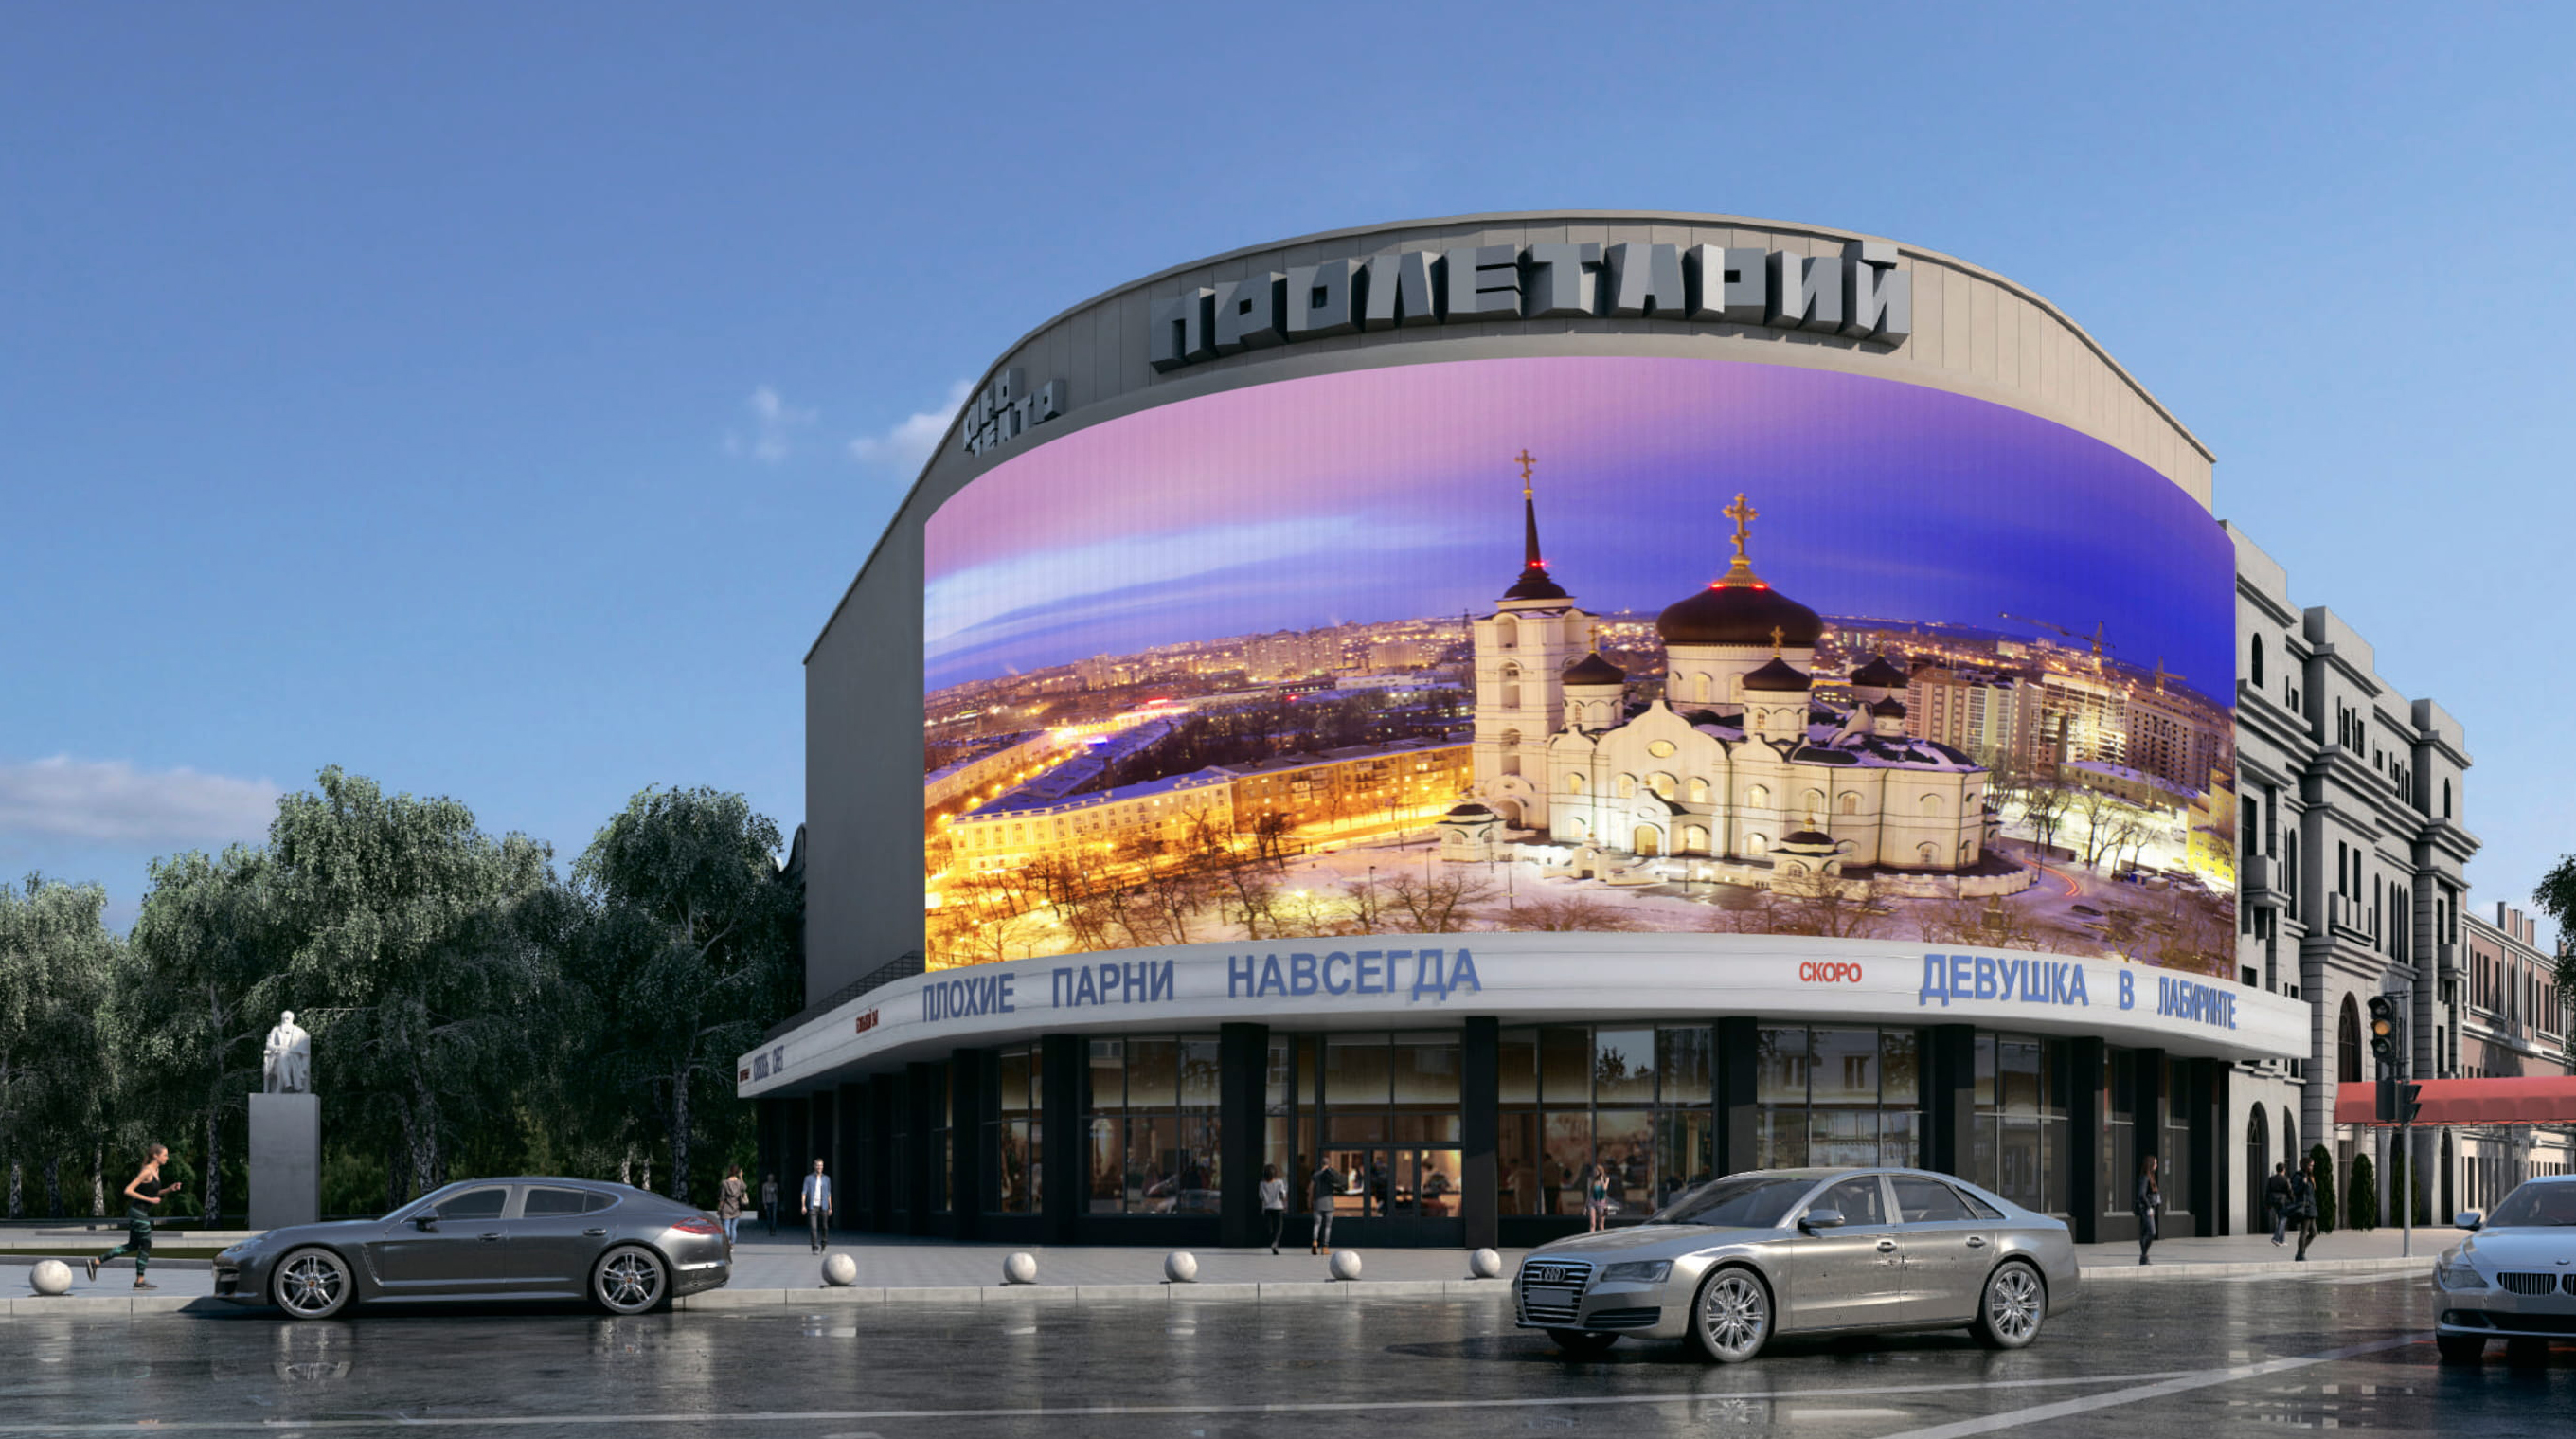 16-тонный медиафасад могут установить на кинотеатре «Пролетарий» в Воронеже - фото 1